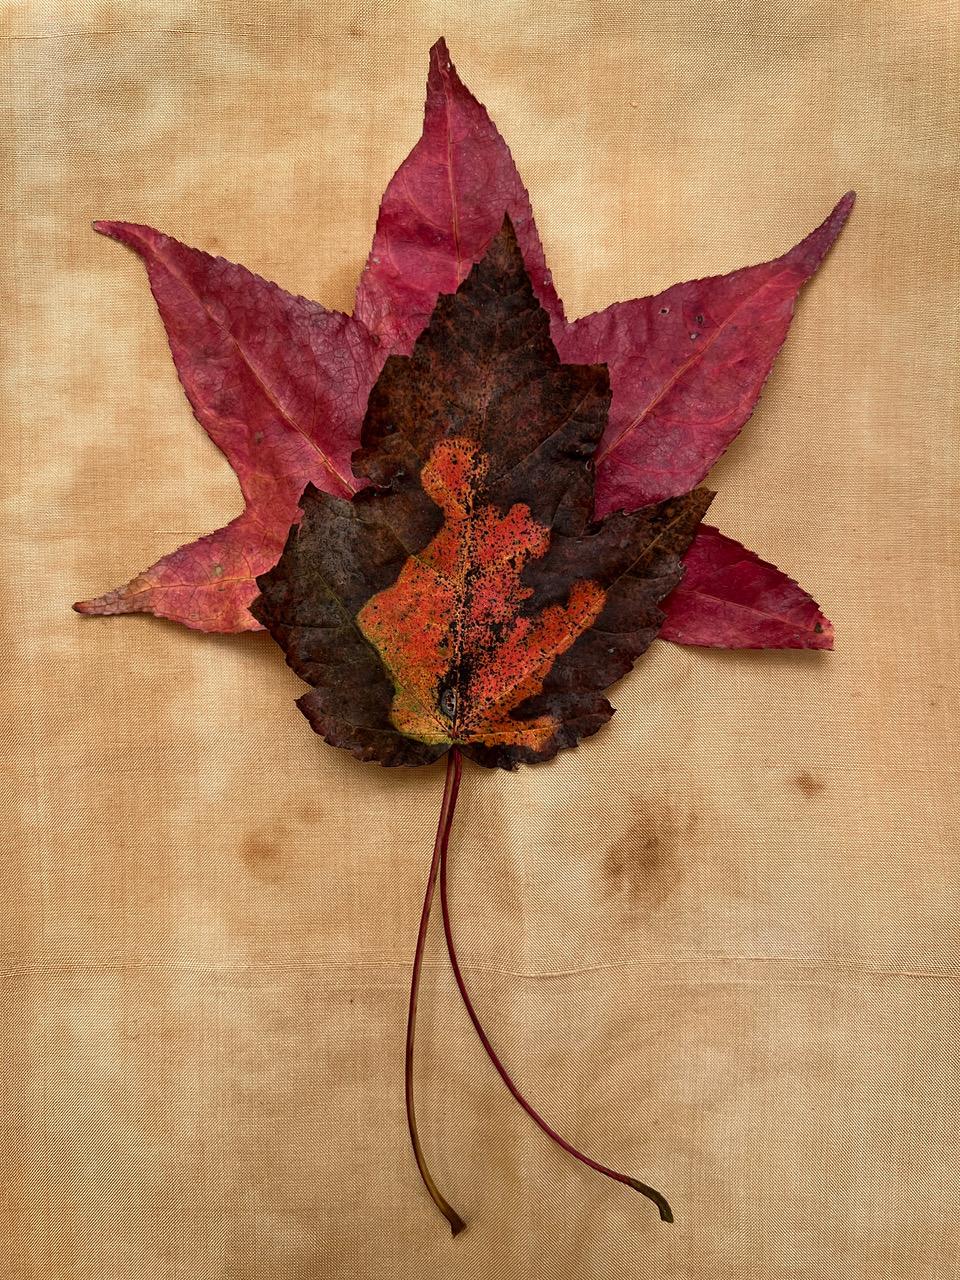 Paul Cava Color Photograph – Ohne Titel #3440 aus der Serie "Leaves": Natur-Stillleben-Blattfotografie mit Rot